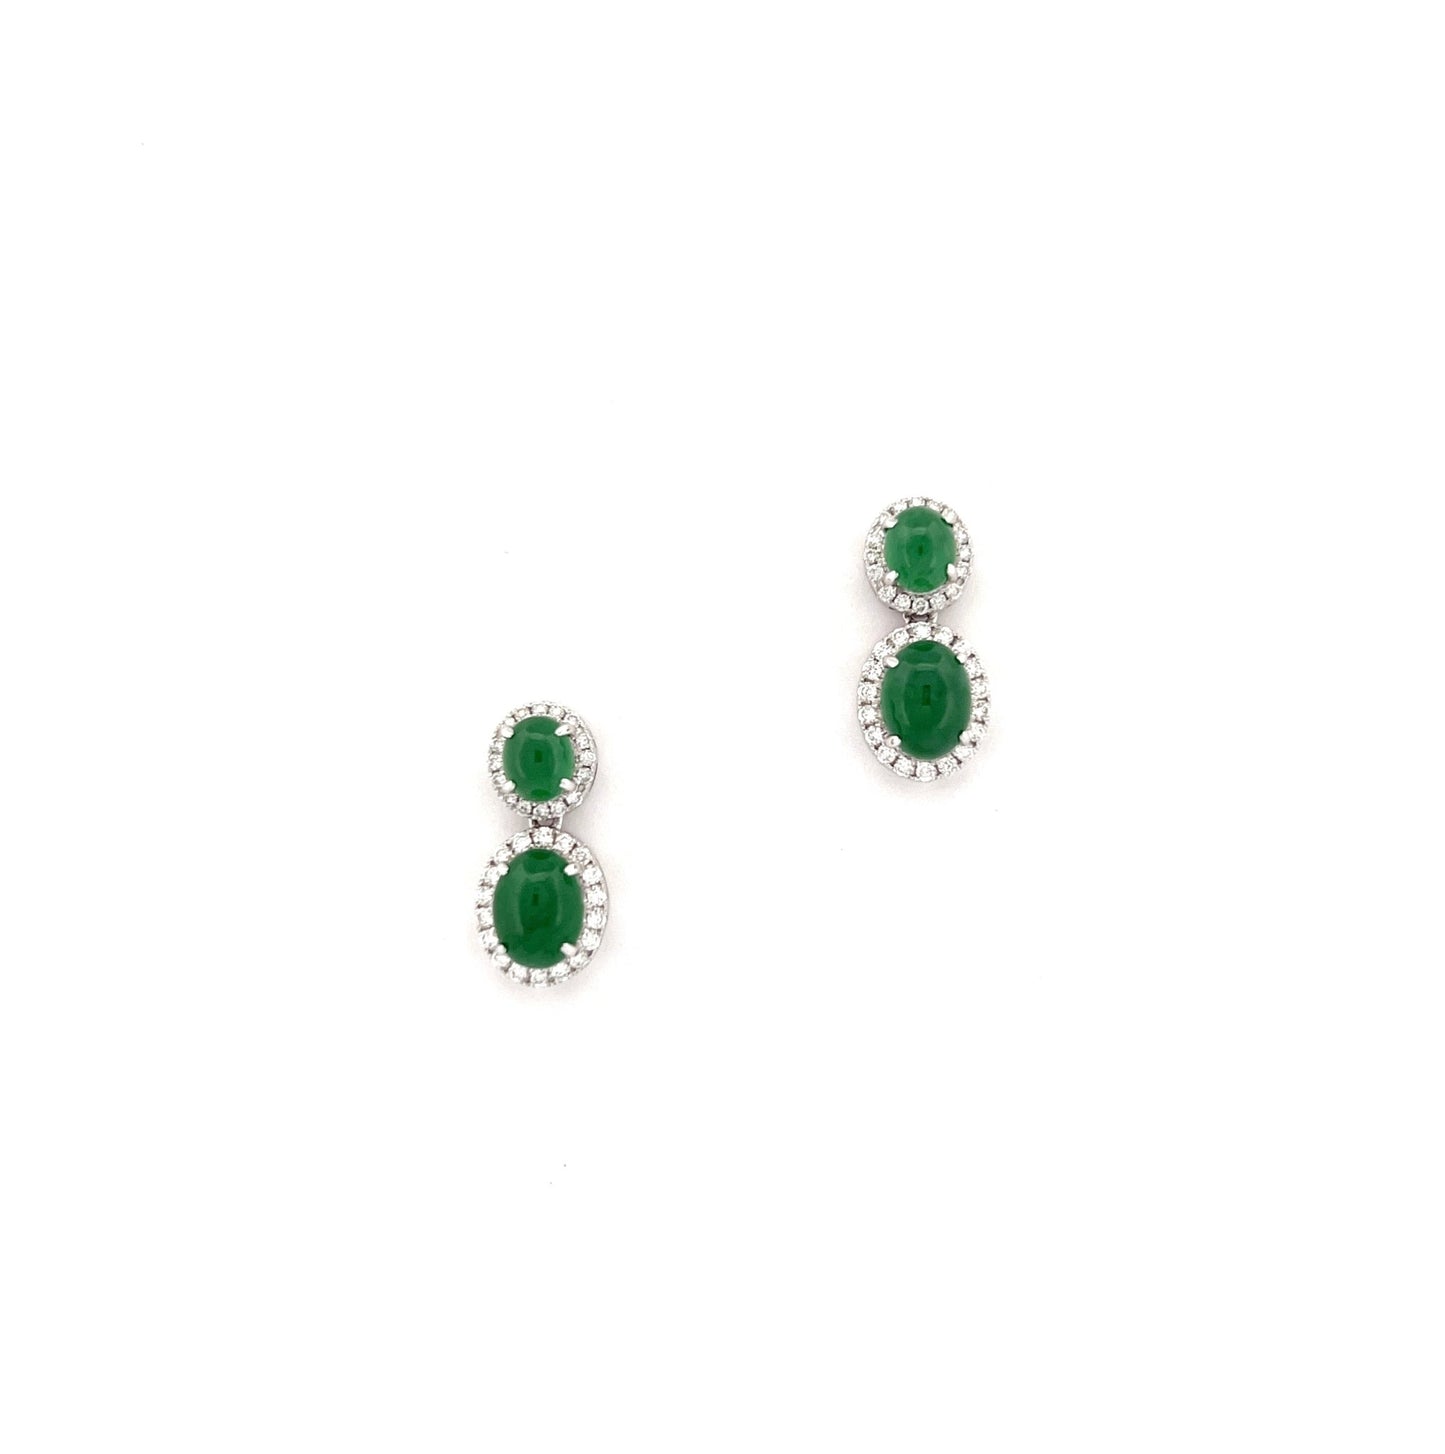 耳環 - 冰種陽綠鵝蛋形天然翡翠配鑽石18K白色金耳環 - 雅玉珠寶